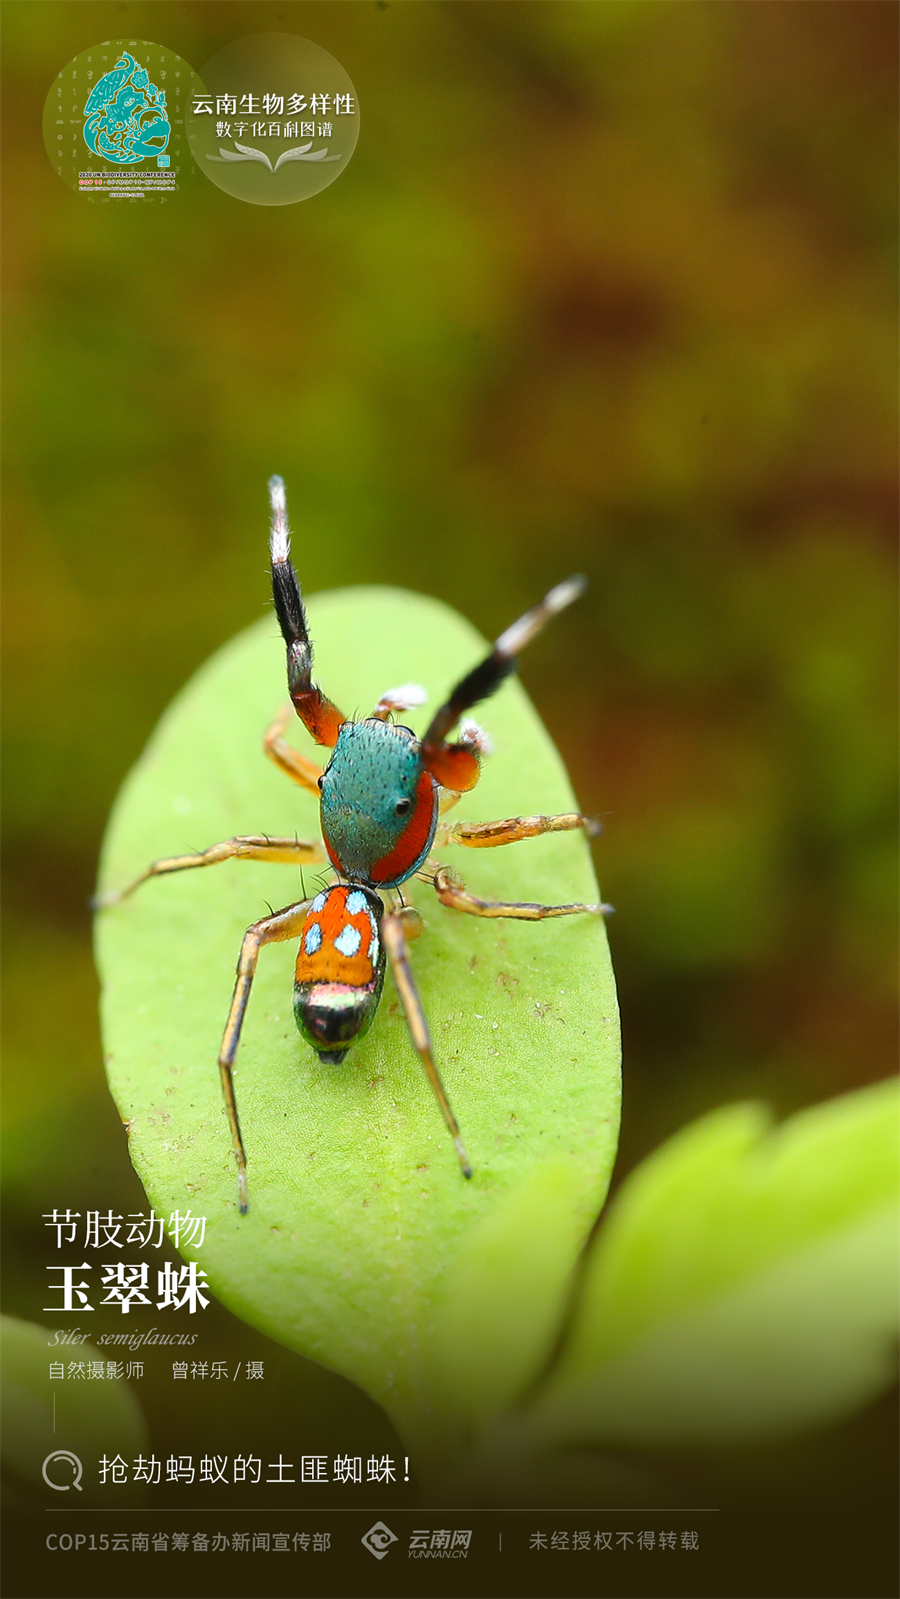 【云南生物多样性数字化百科图谱】玉翠蛛:抢劫蚂蚁的土匪蜘蛛